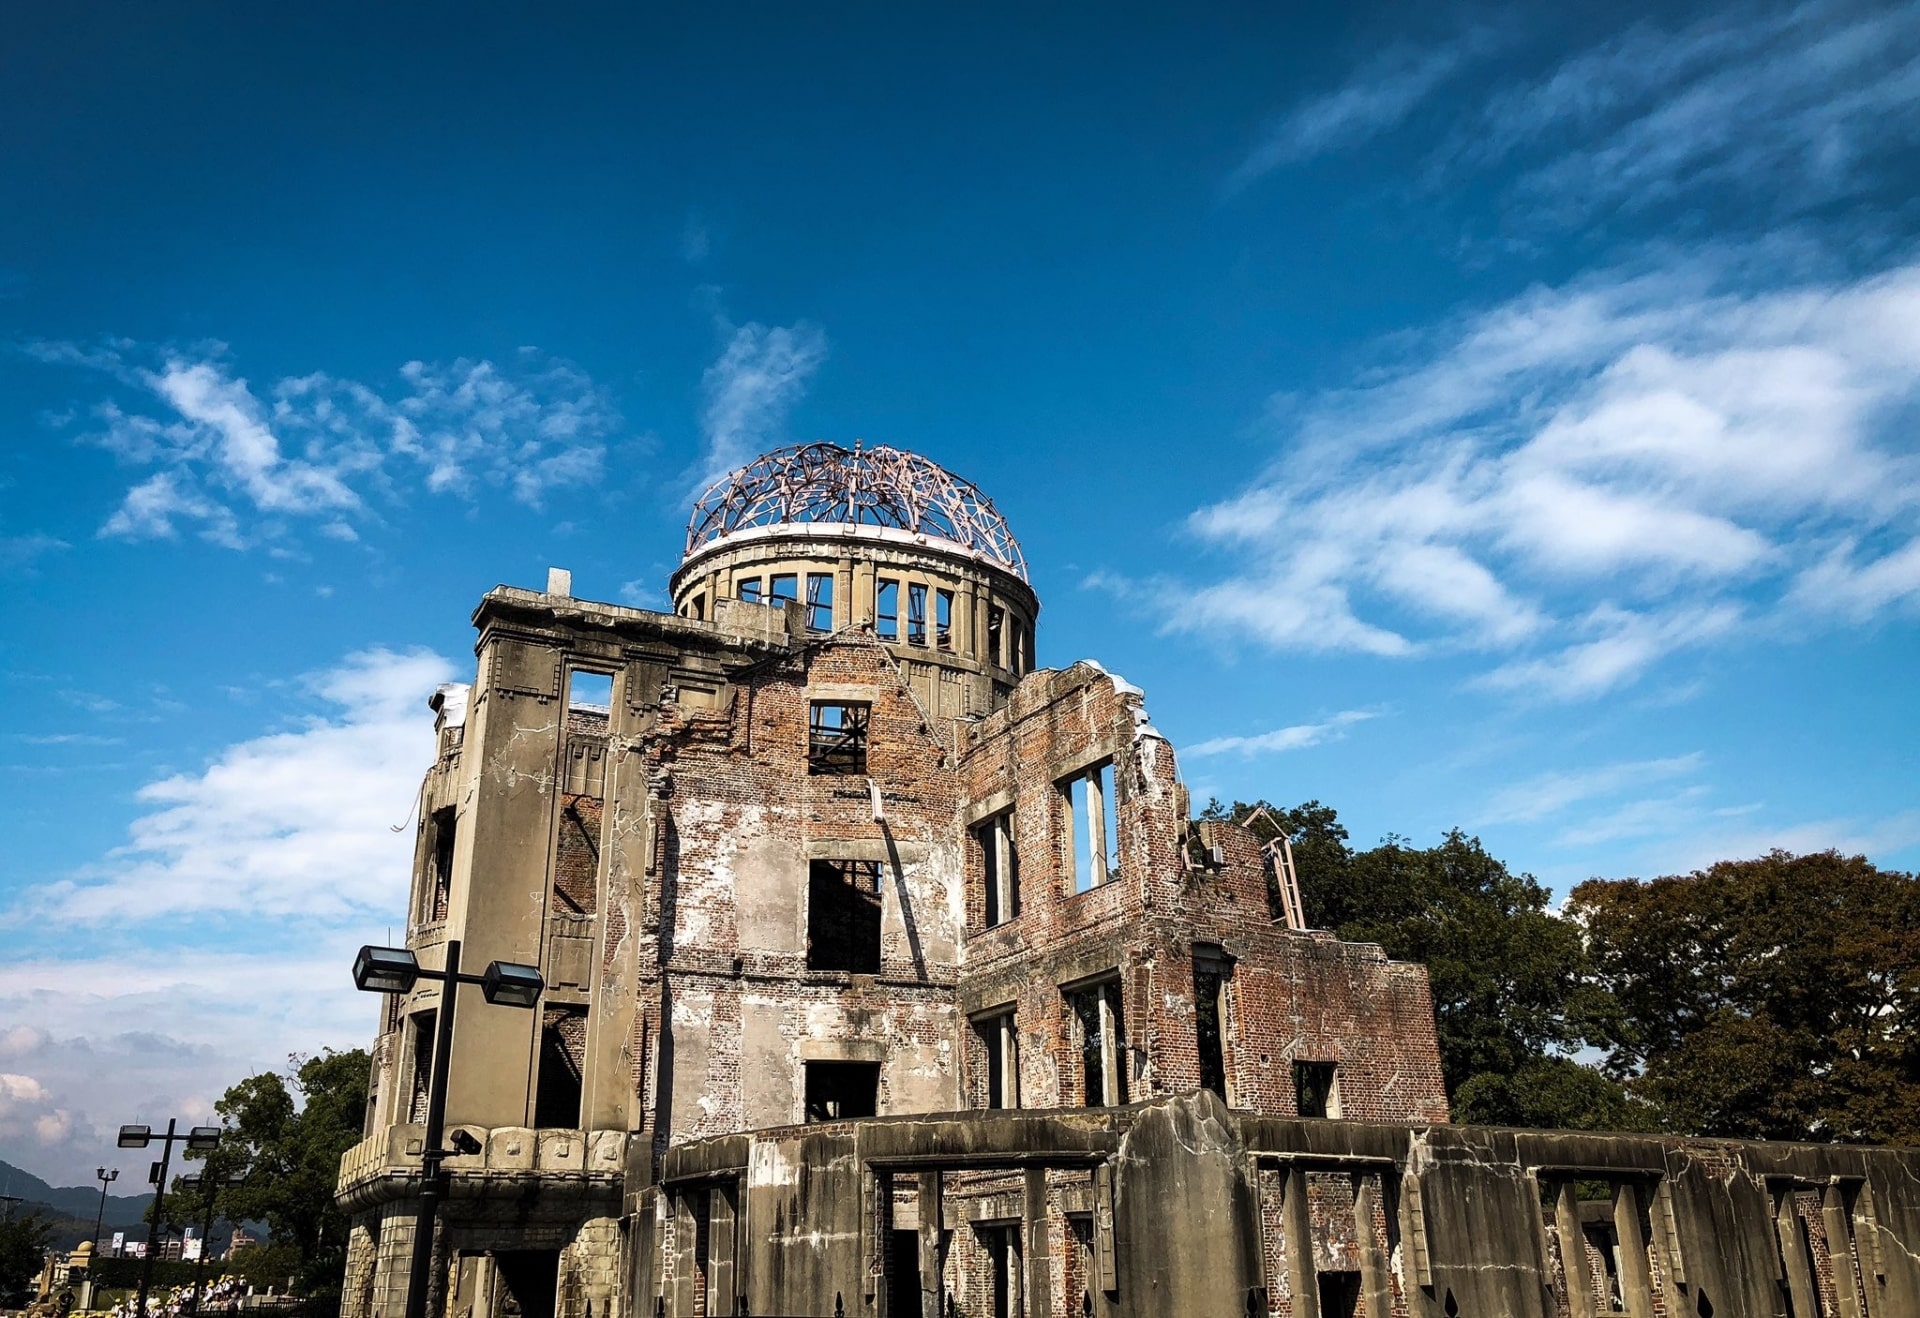 Hiroshima Peace Memorial Museum (Hiroshima)